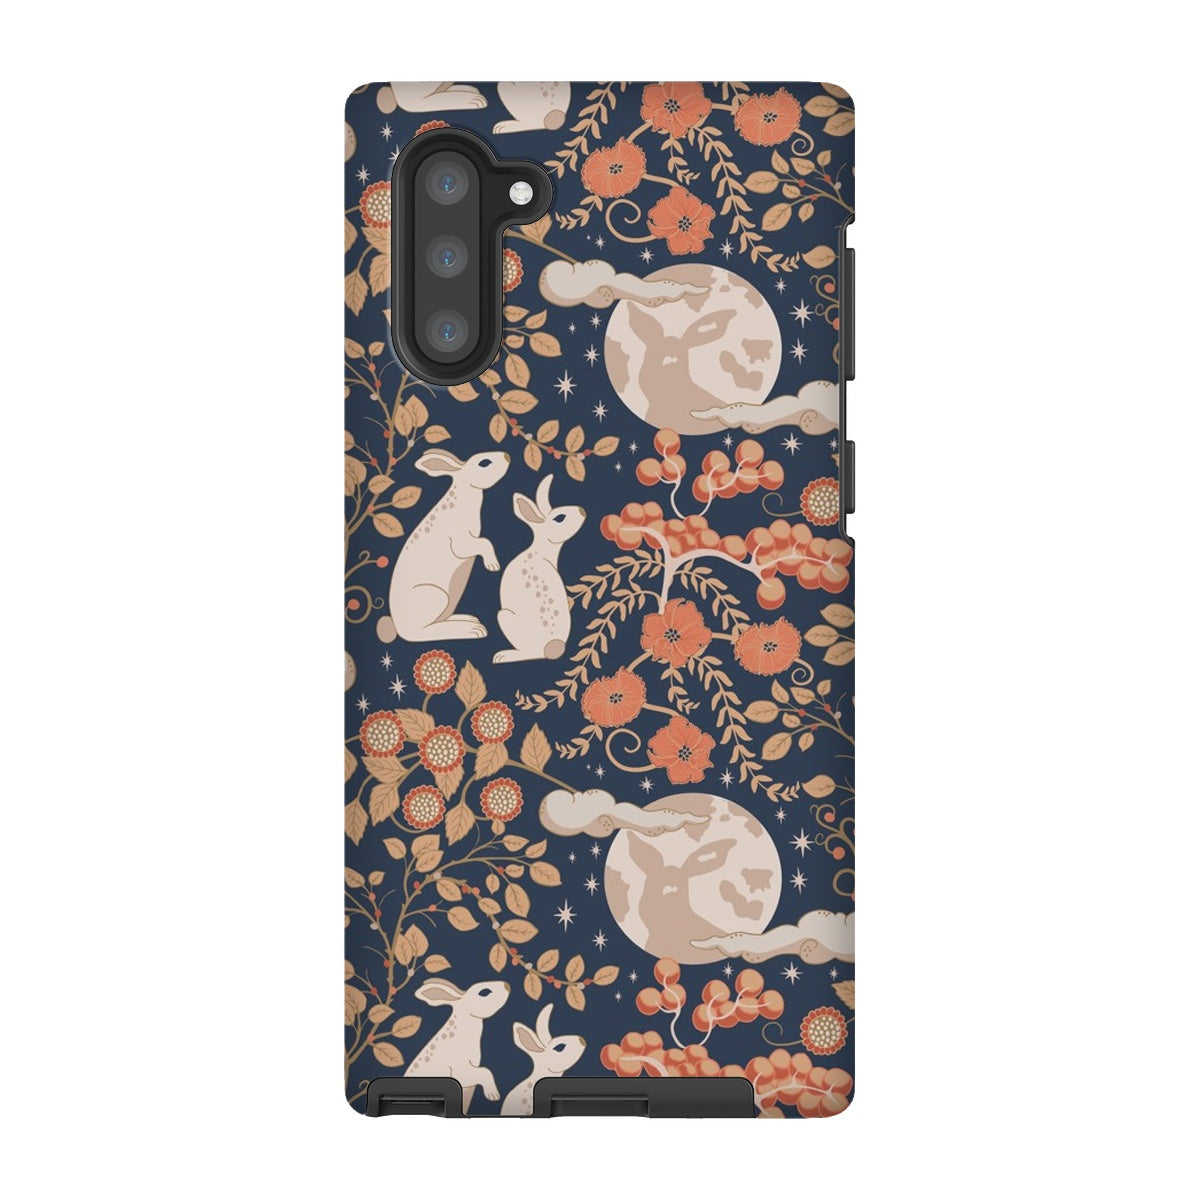 Bunny & the Moon Tough Phone Case